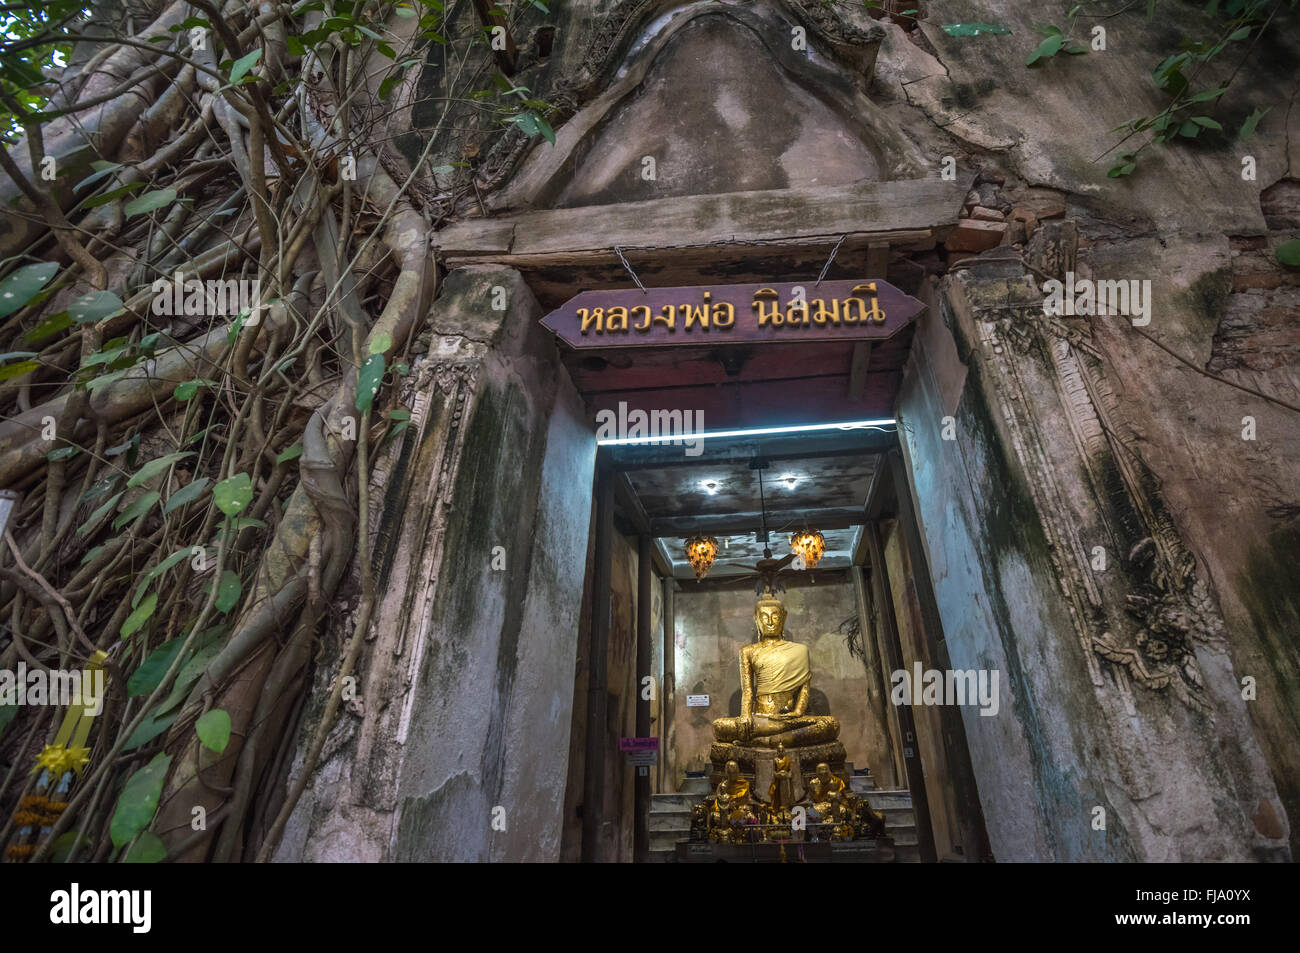 Wat Bang Kung, The Banyan tree temple, Amphawa, Thailand Stock Photo